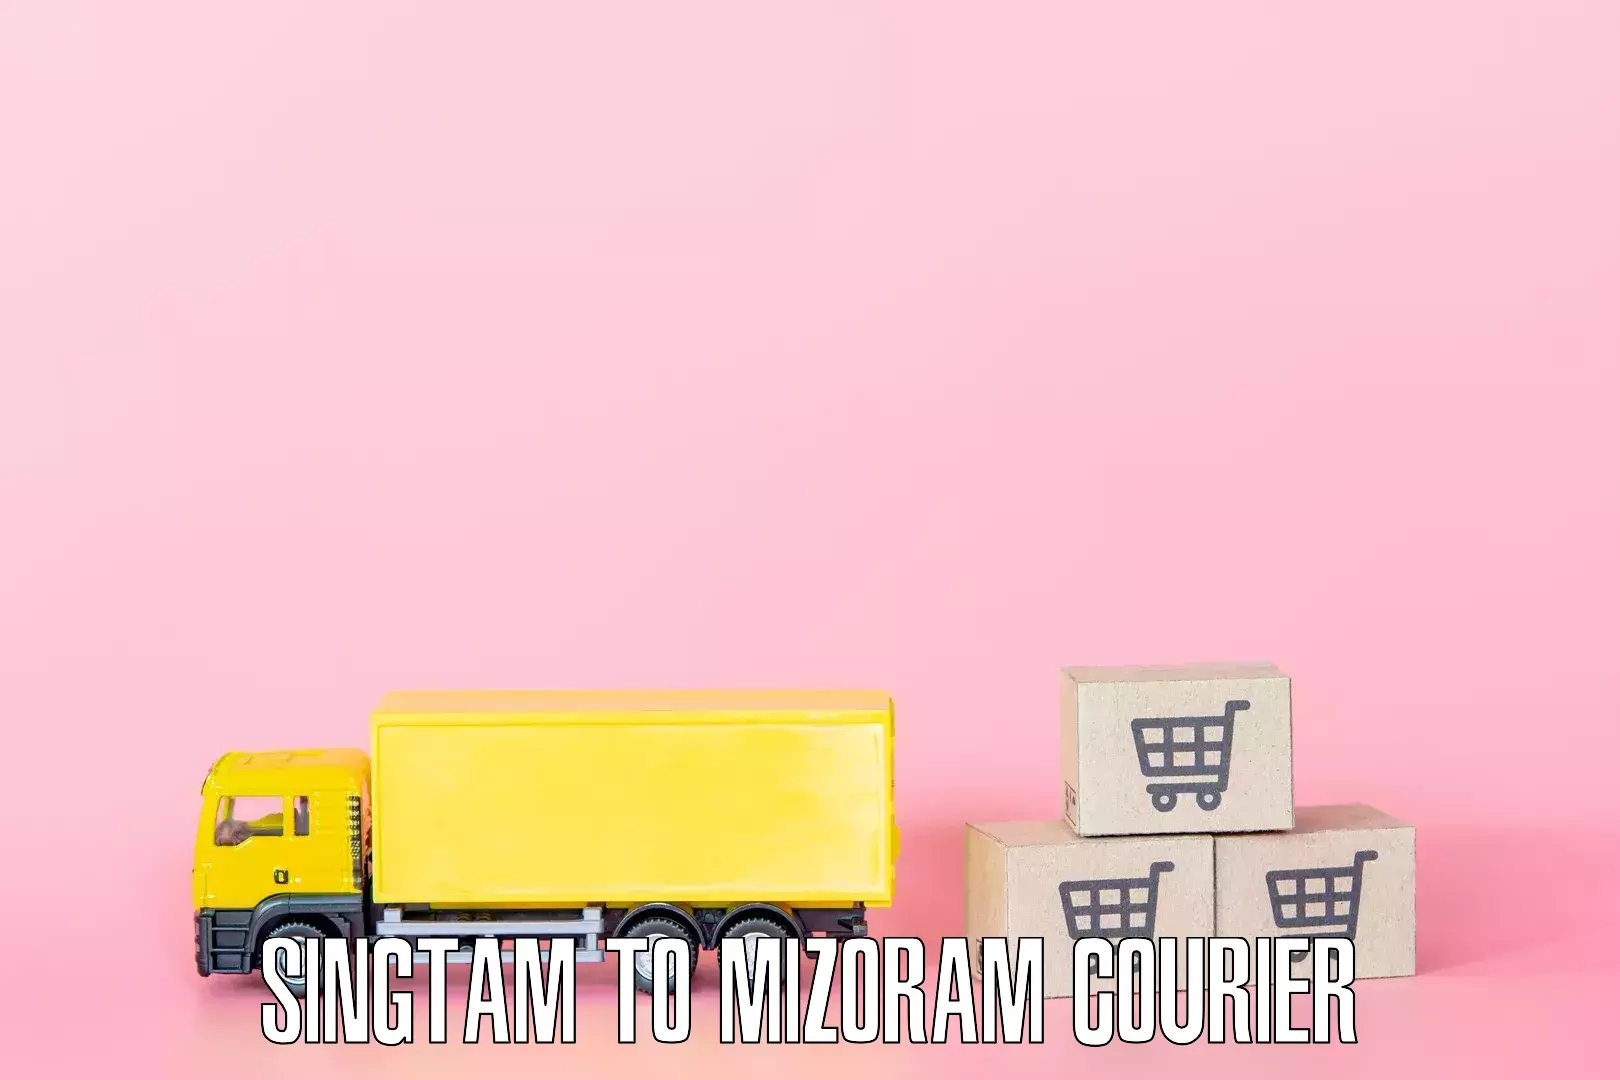 Furniture logistics in Singtam to Mizoram